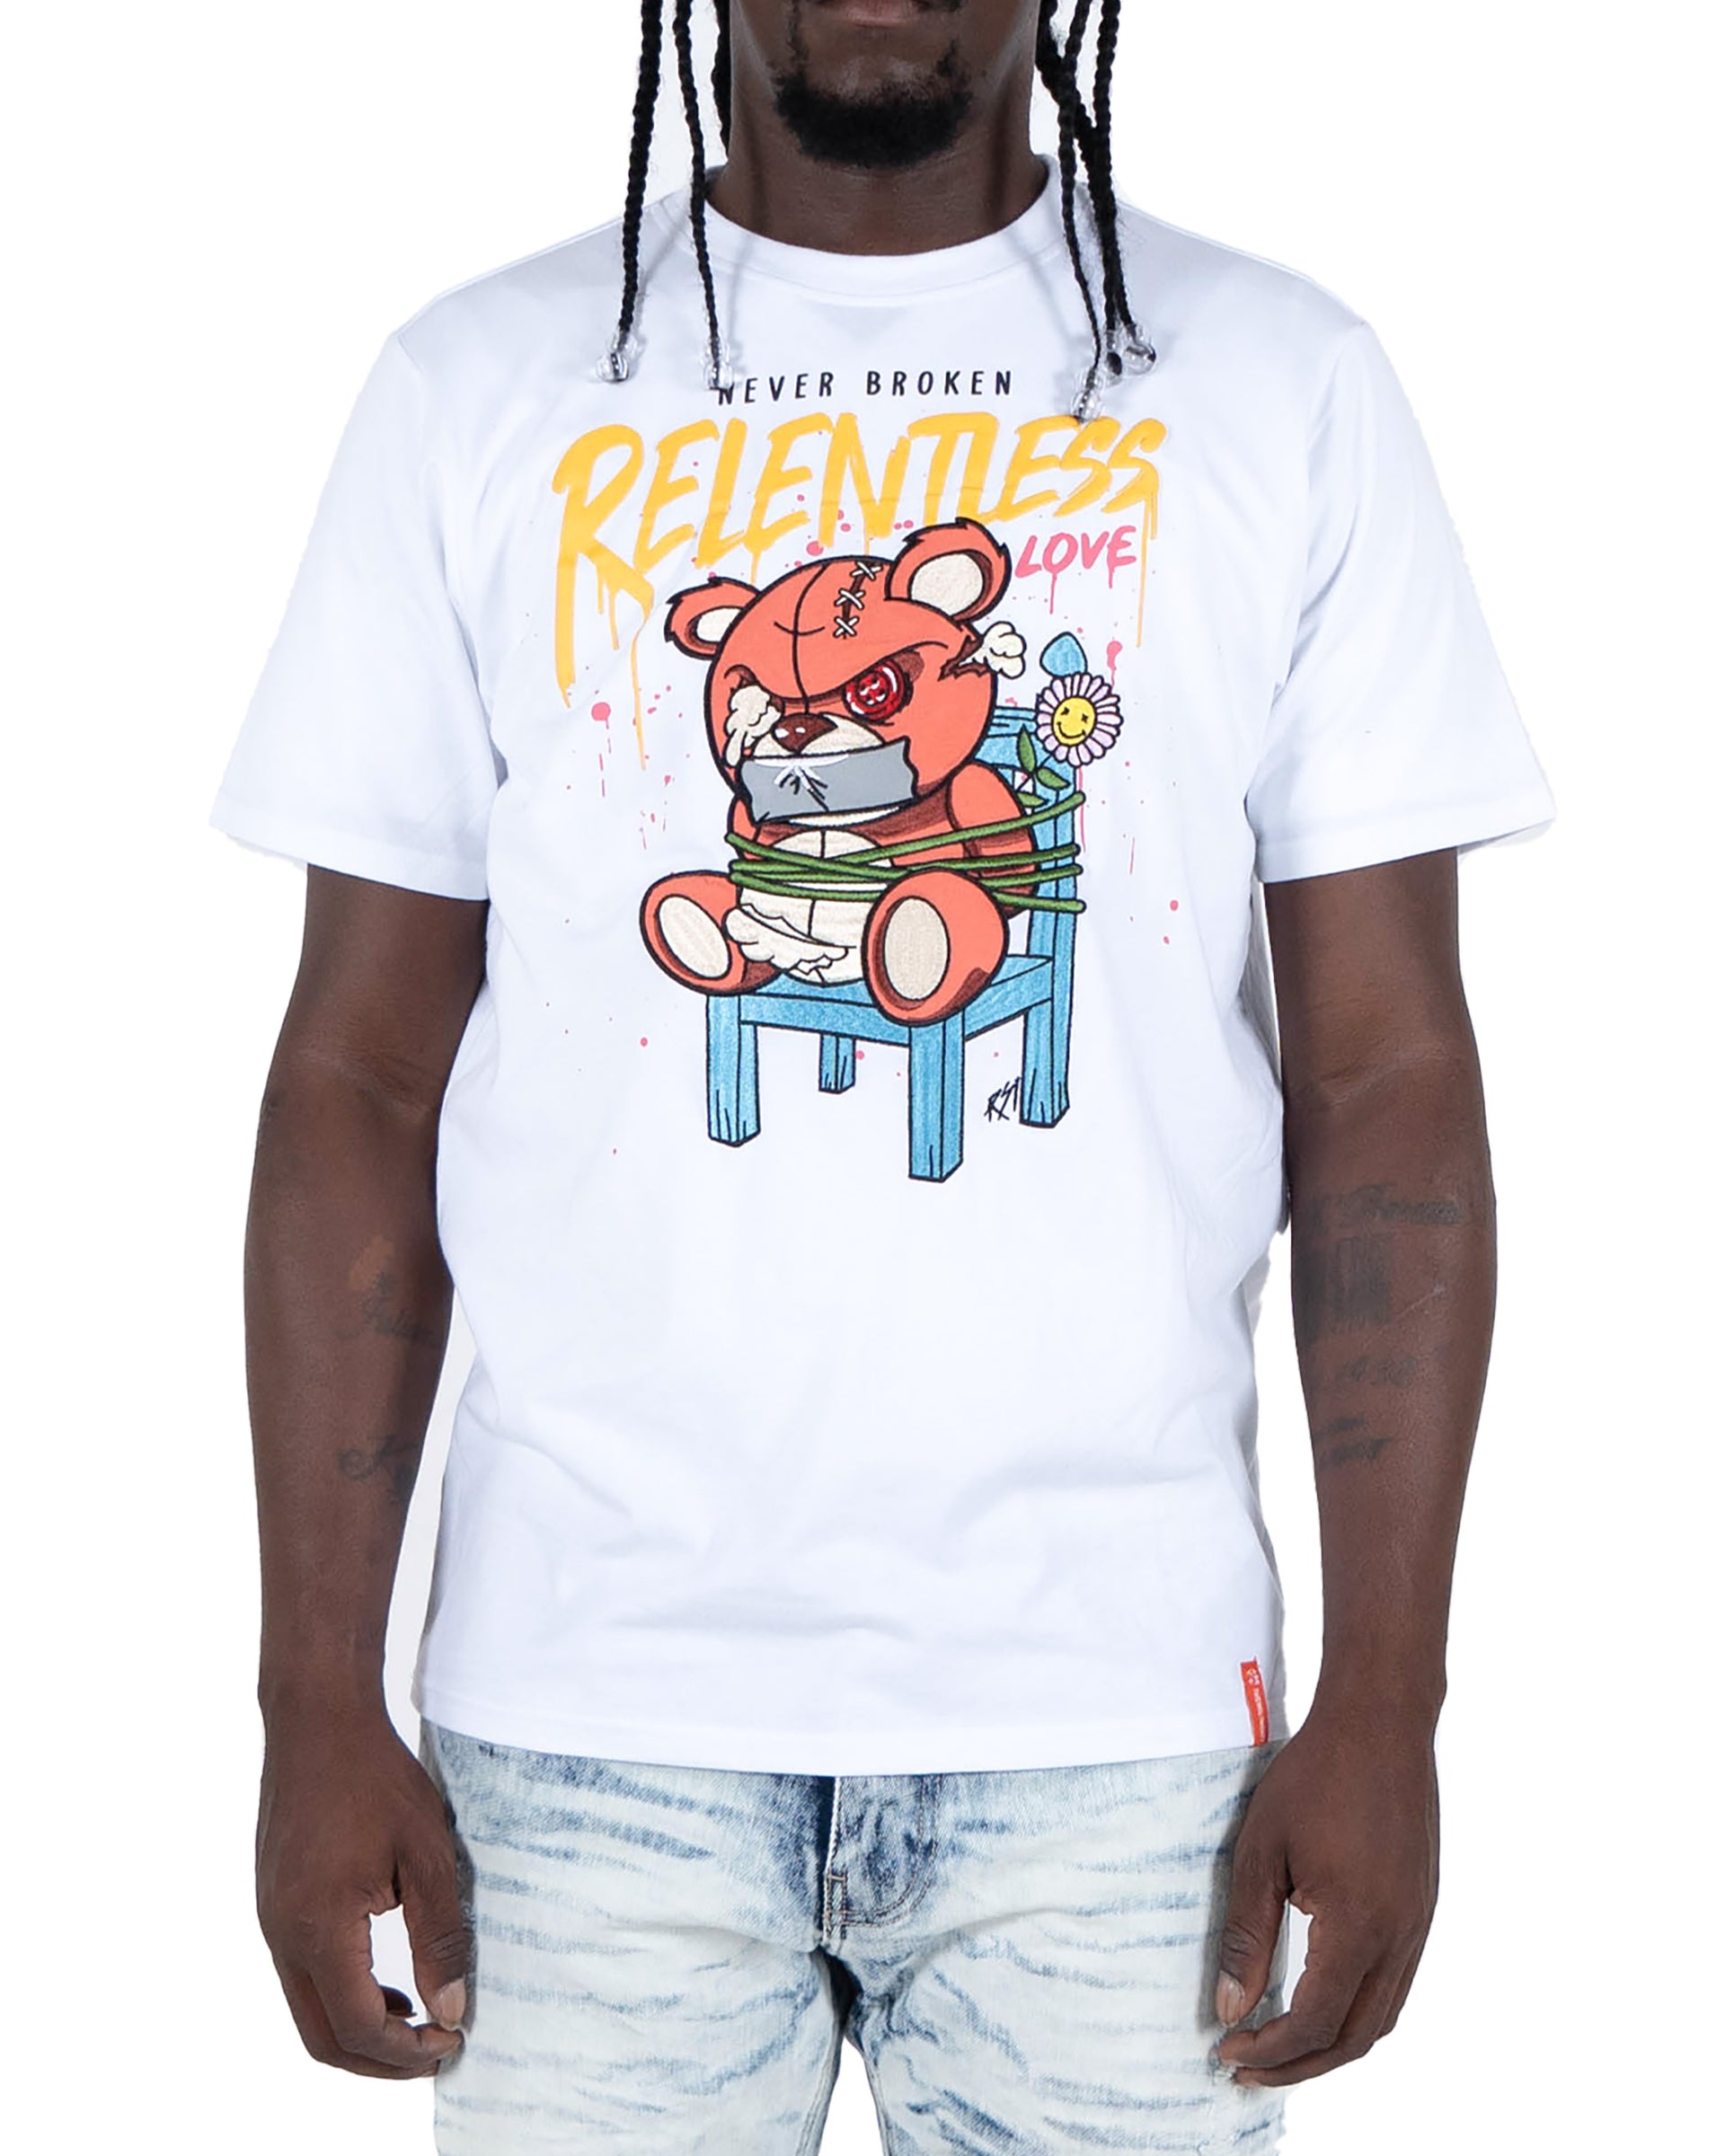 Men's "Relentless" Graphic T-Shirt | White